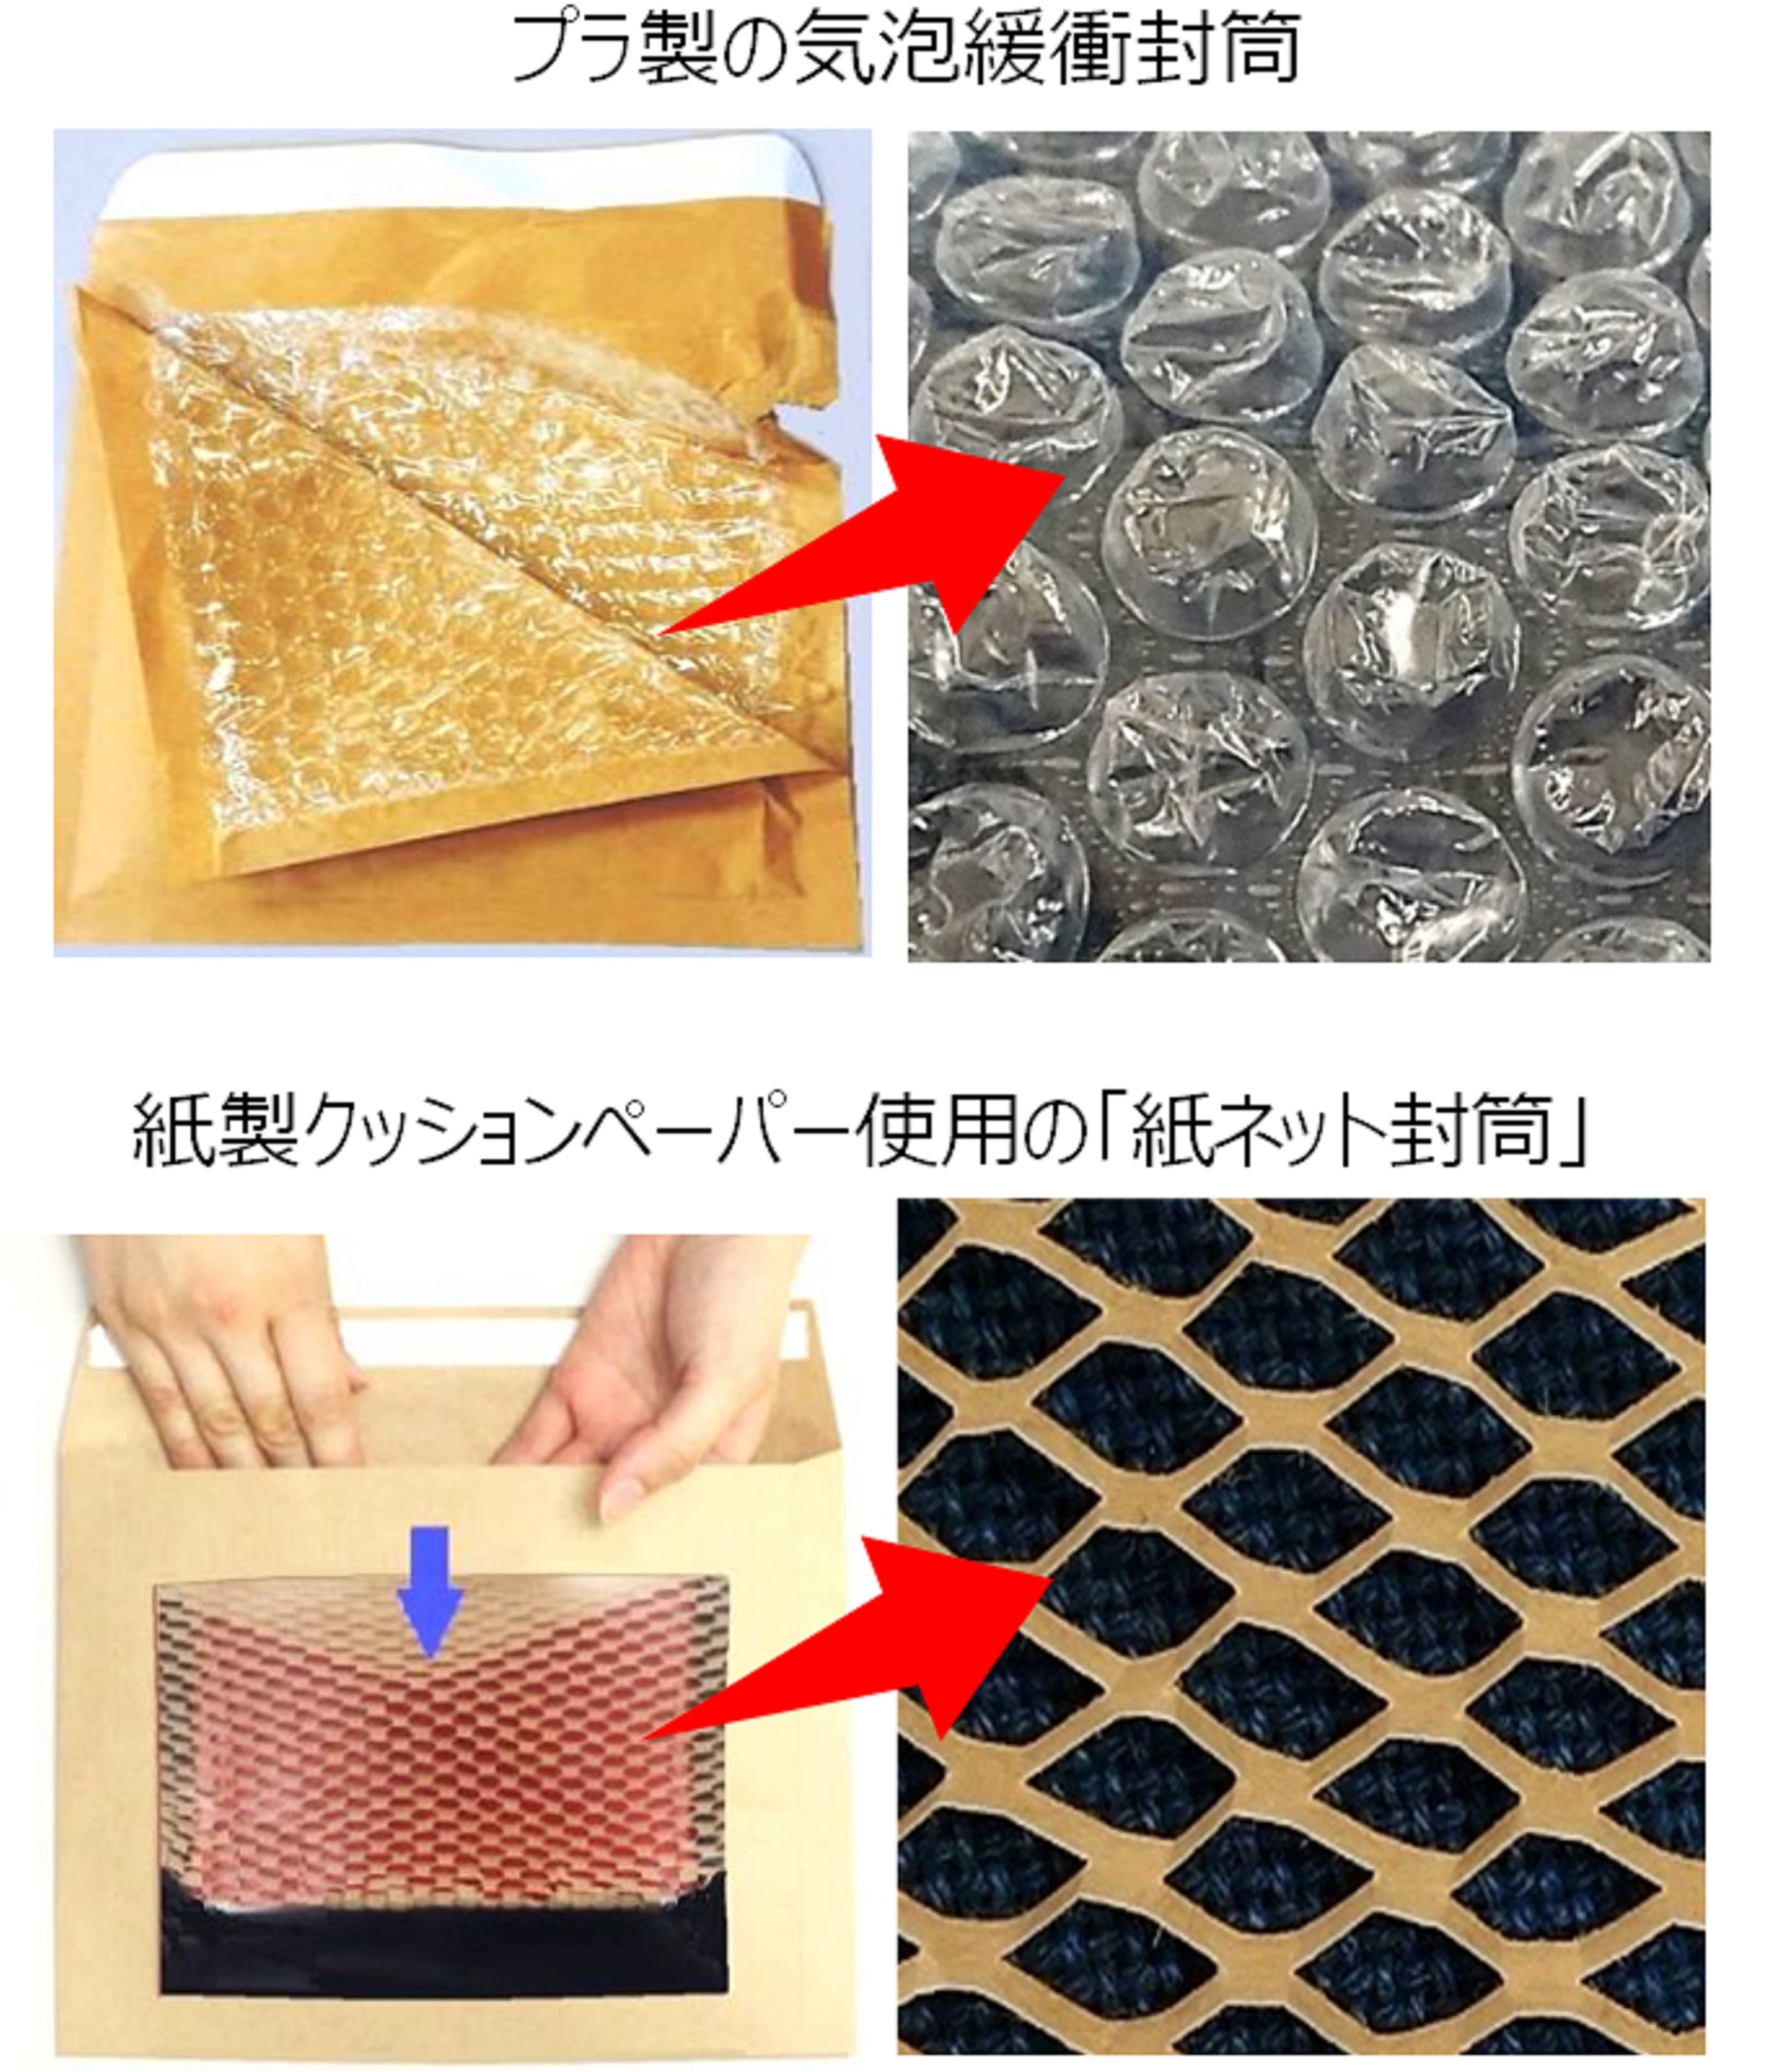 プラ製気泡緩衝材を使わないALL紙製のネット通販用包材「紙ネット封筒」